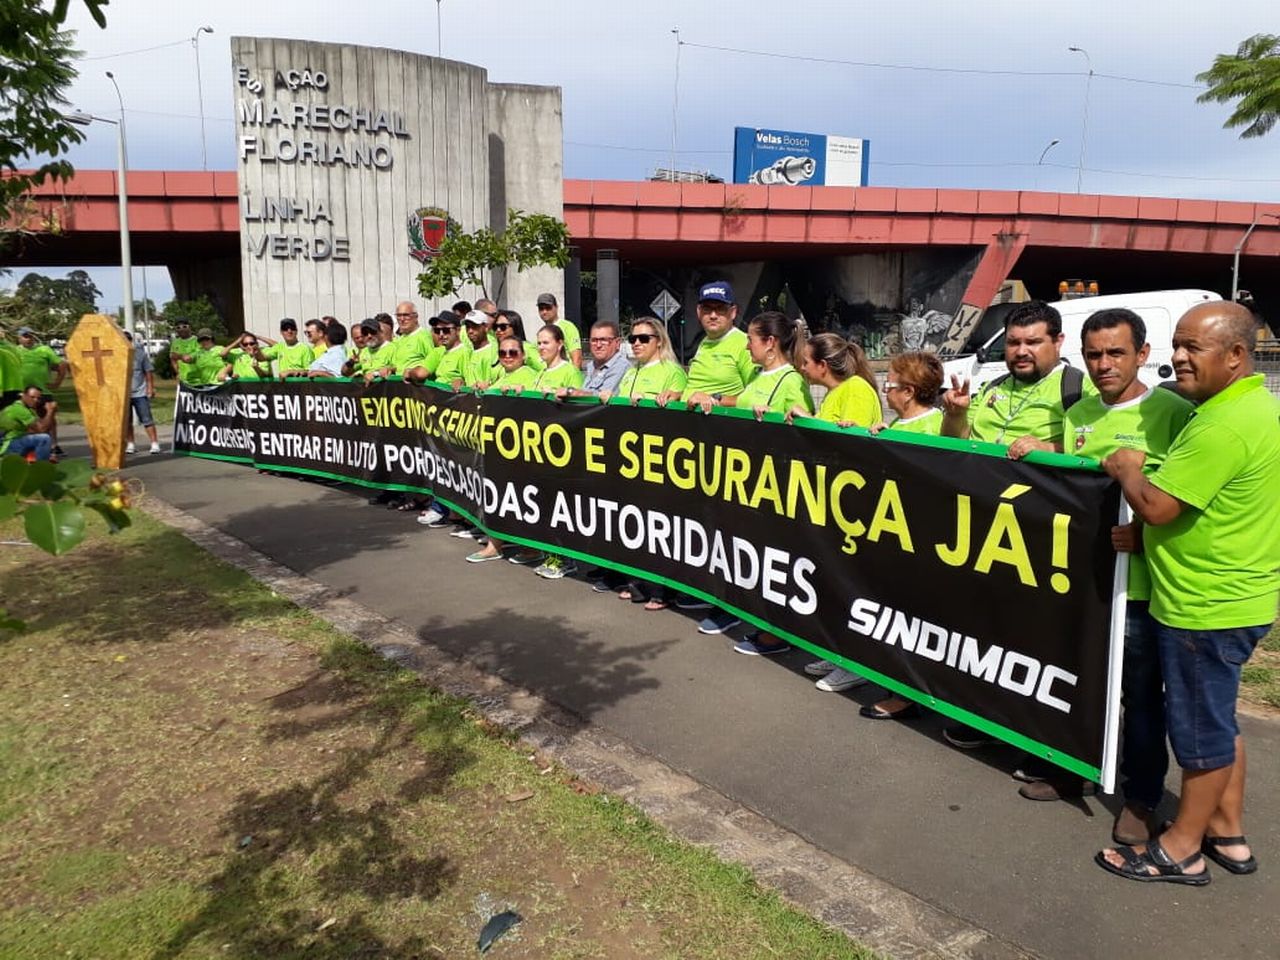 Protesto fechou a Linha Verde na tarde desta quinta-feira (20). Foto: Colaboração/Sindimoc